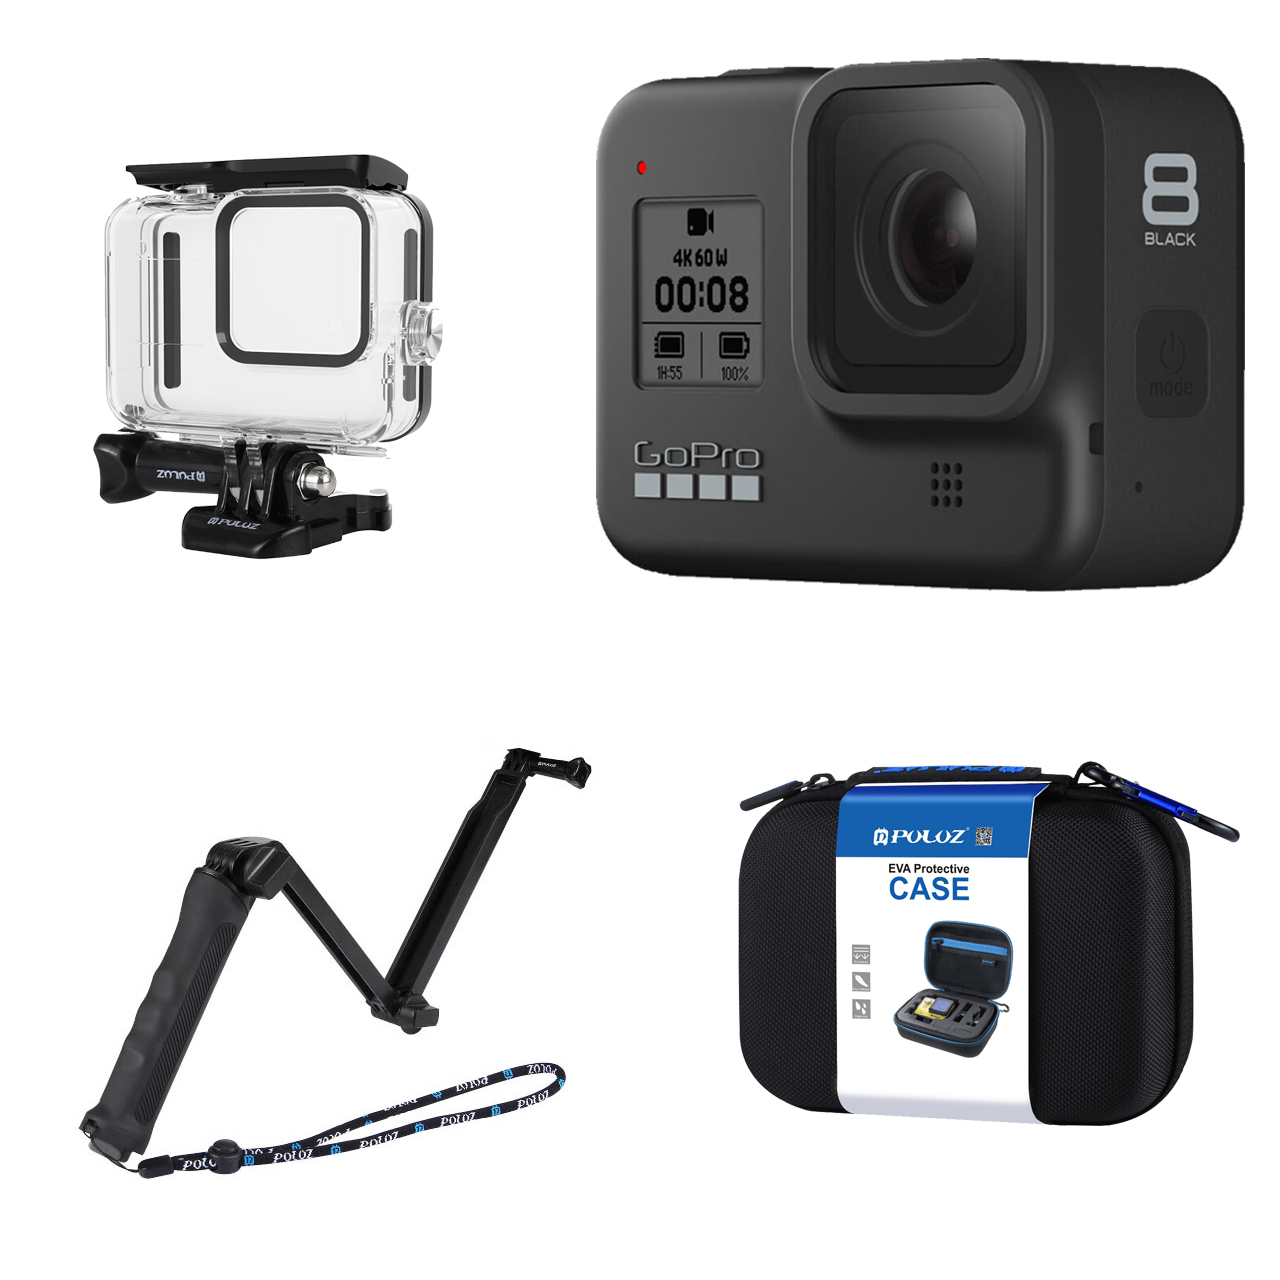 دوربین فیلم برداری ورزشی گوپرو مدل HERO8 Black به همراه لوازم جانبی پلوز